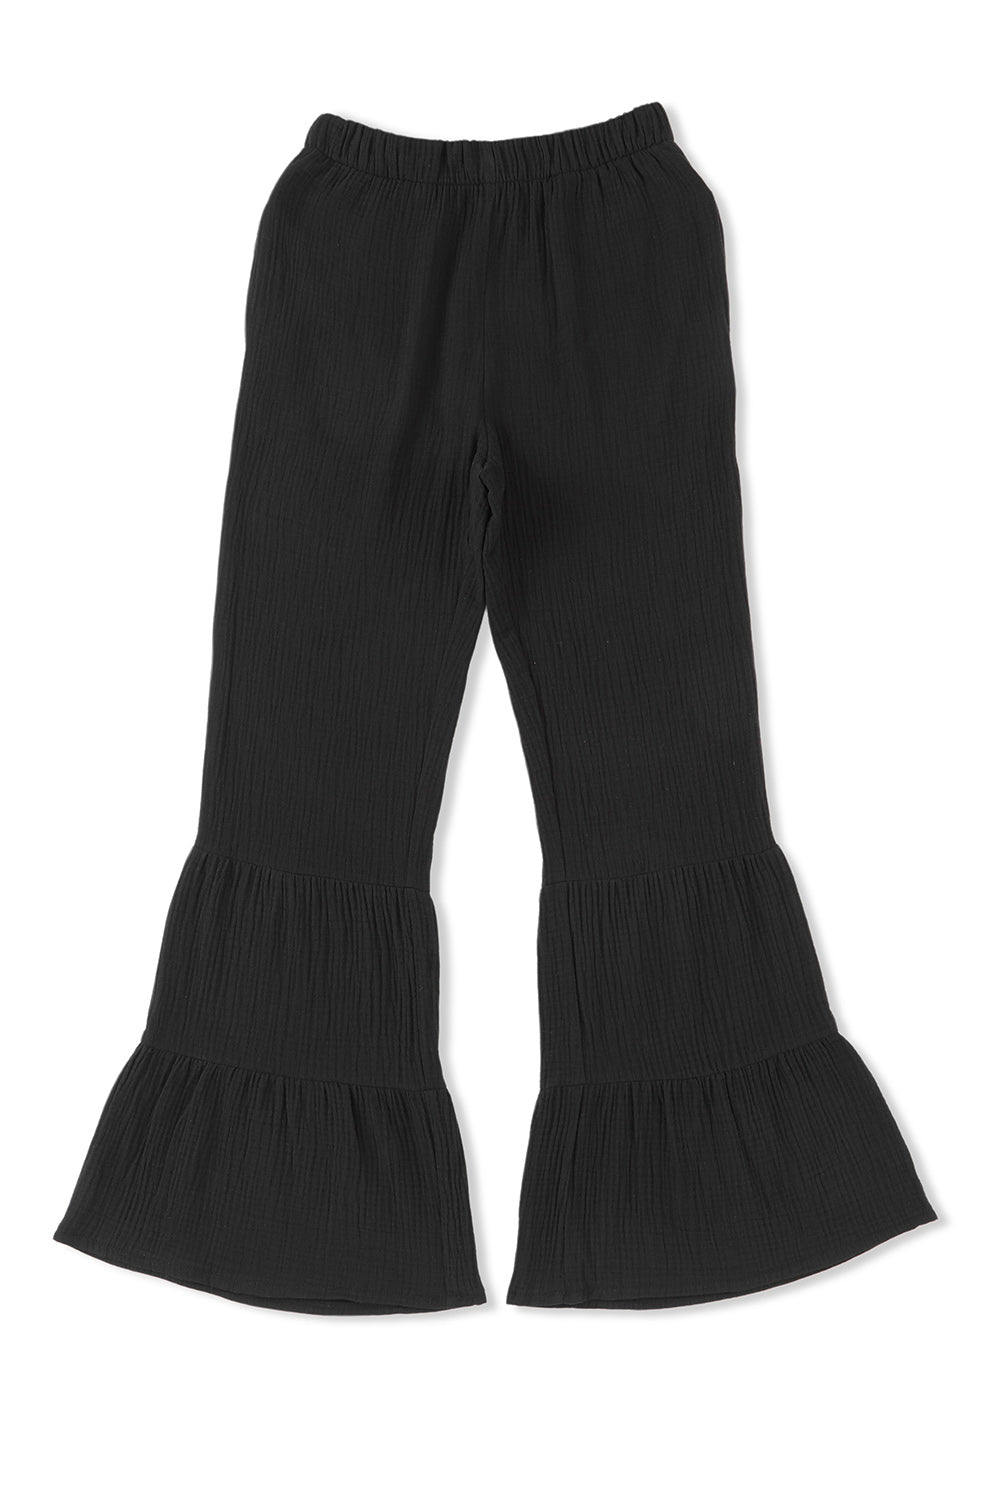 Black Textured High Waist Ruffled Bell Bottom Pants - SELFTRITSS